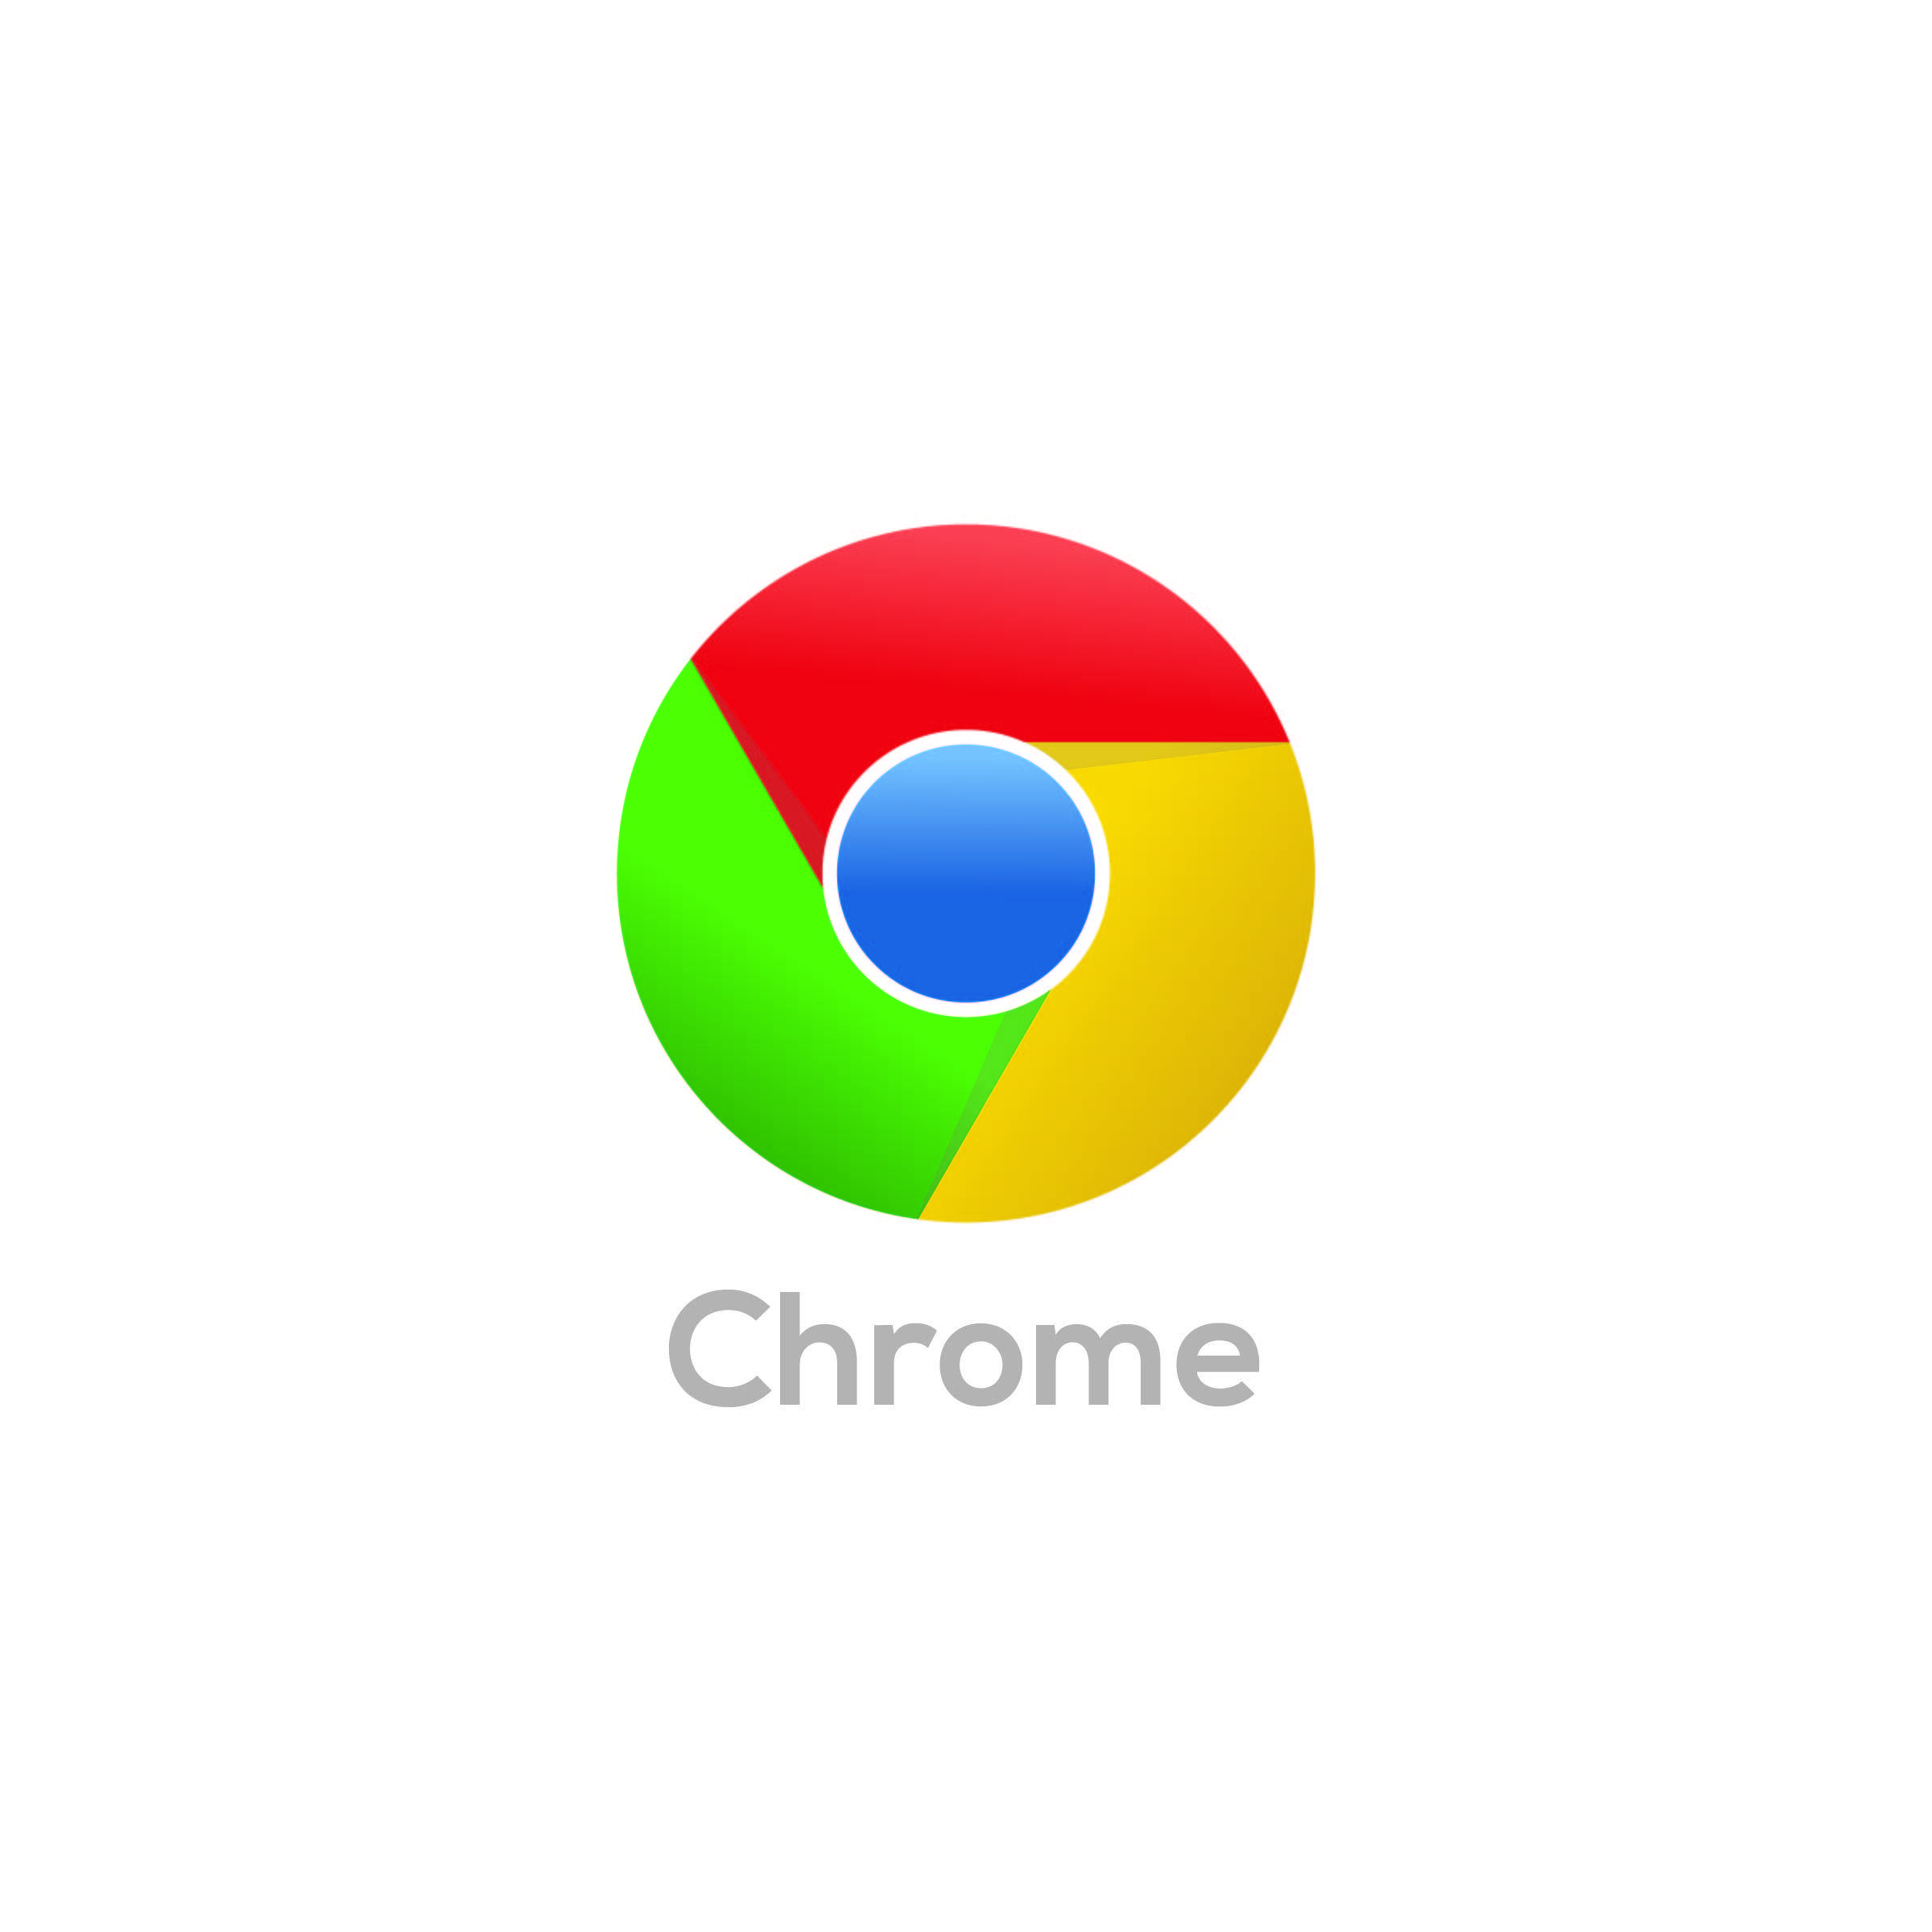 Chrome World Logo - Chrome logo | See Outlook